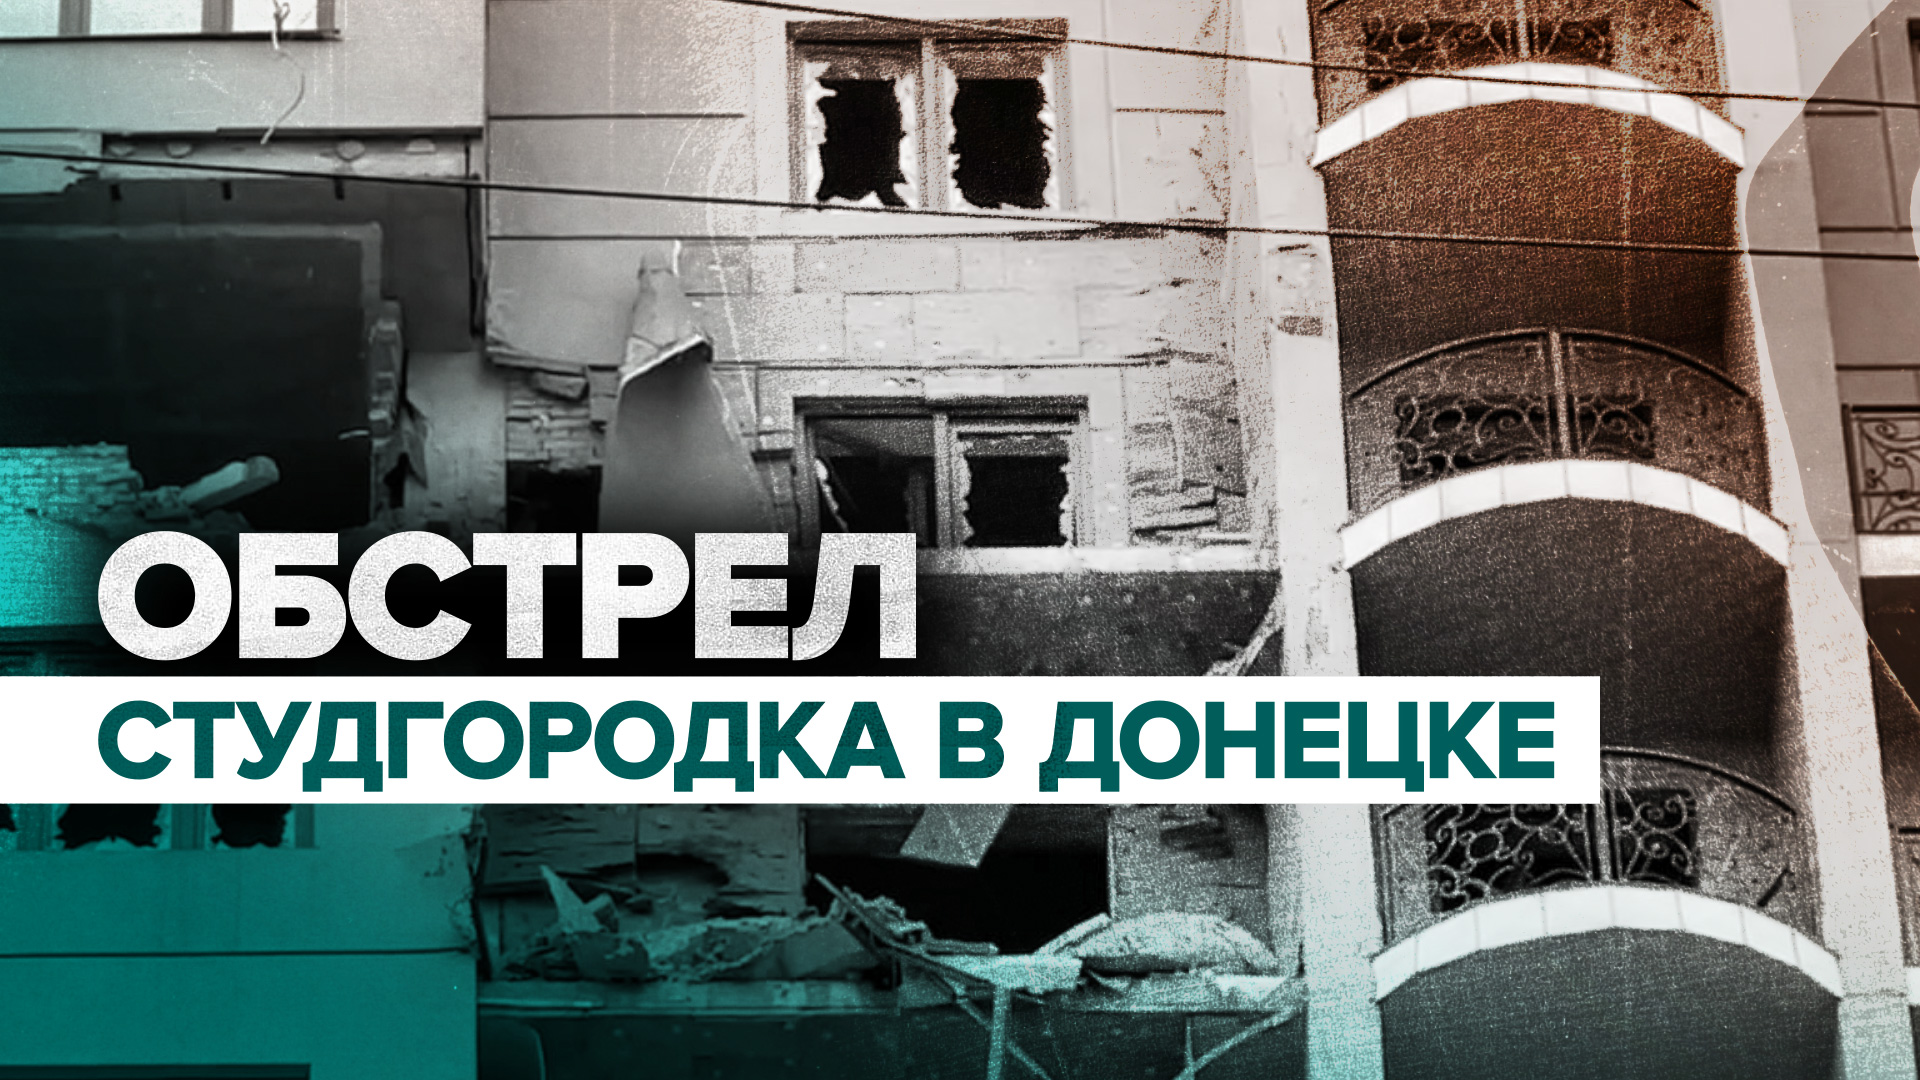 ВСУ обстреляли студгородок в центре Донецка — видео